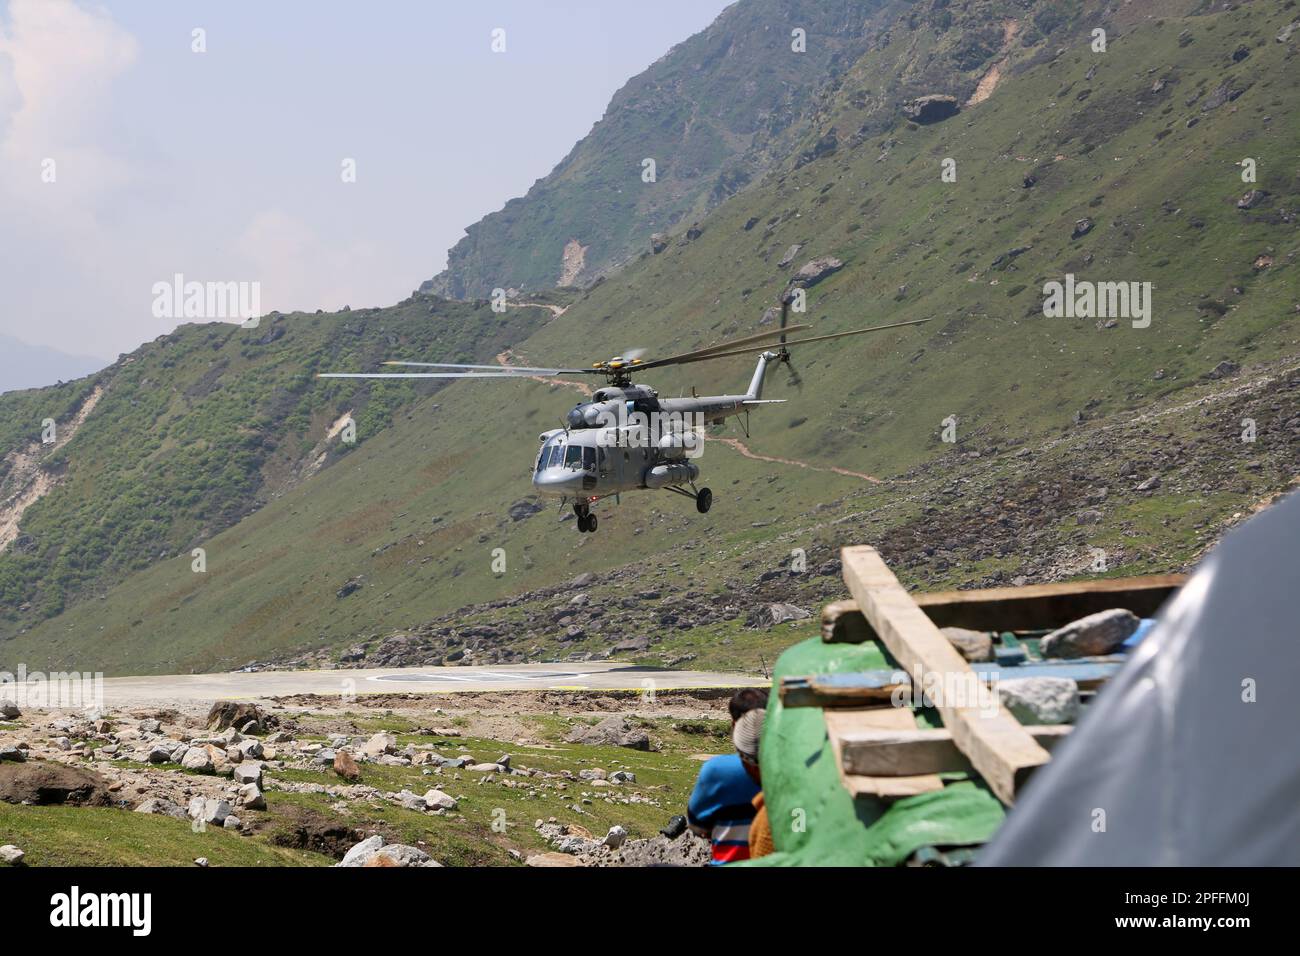 Gli aerei dell'aeronautica indiana hanno raggiunto per i lavori di soccorso nel disastro di Kedarnath. Nel giugno 2013, un nuvoloso di più giorni è stato centrato sullo stato dell'India settentrionale di Ut Foto Stock